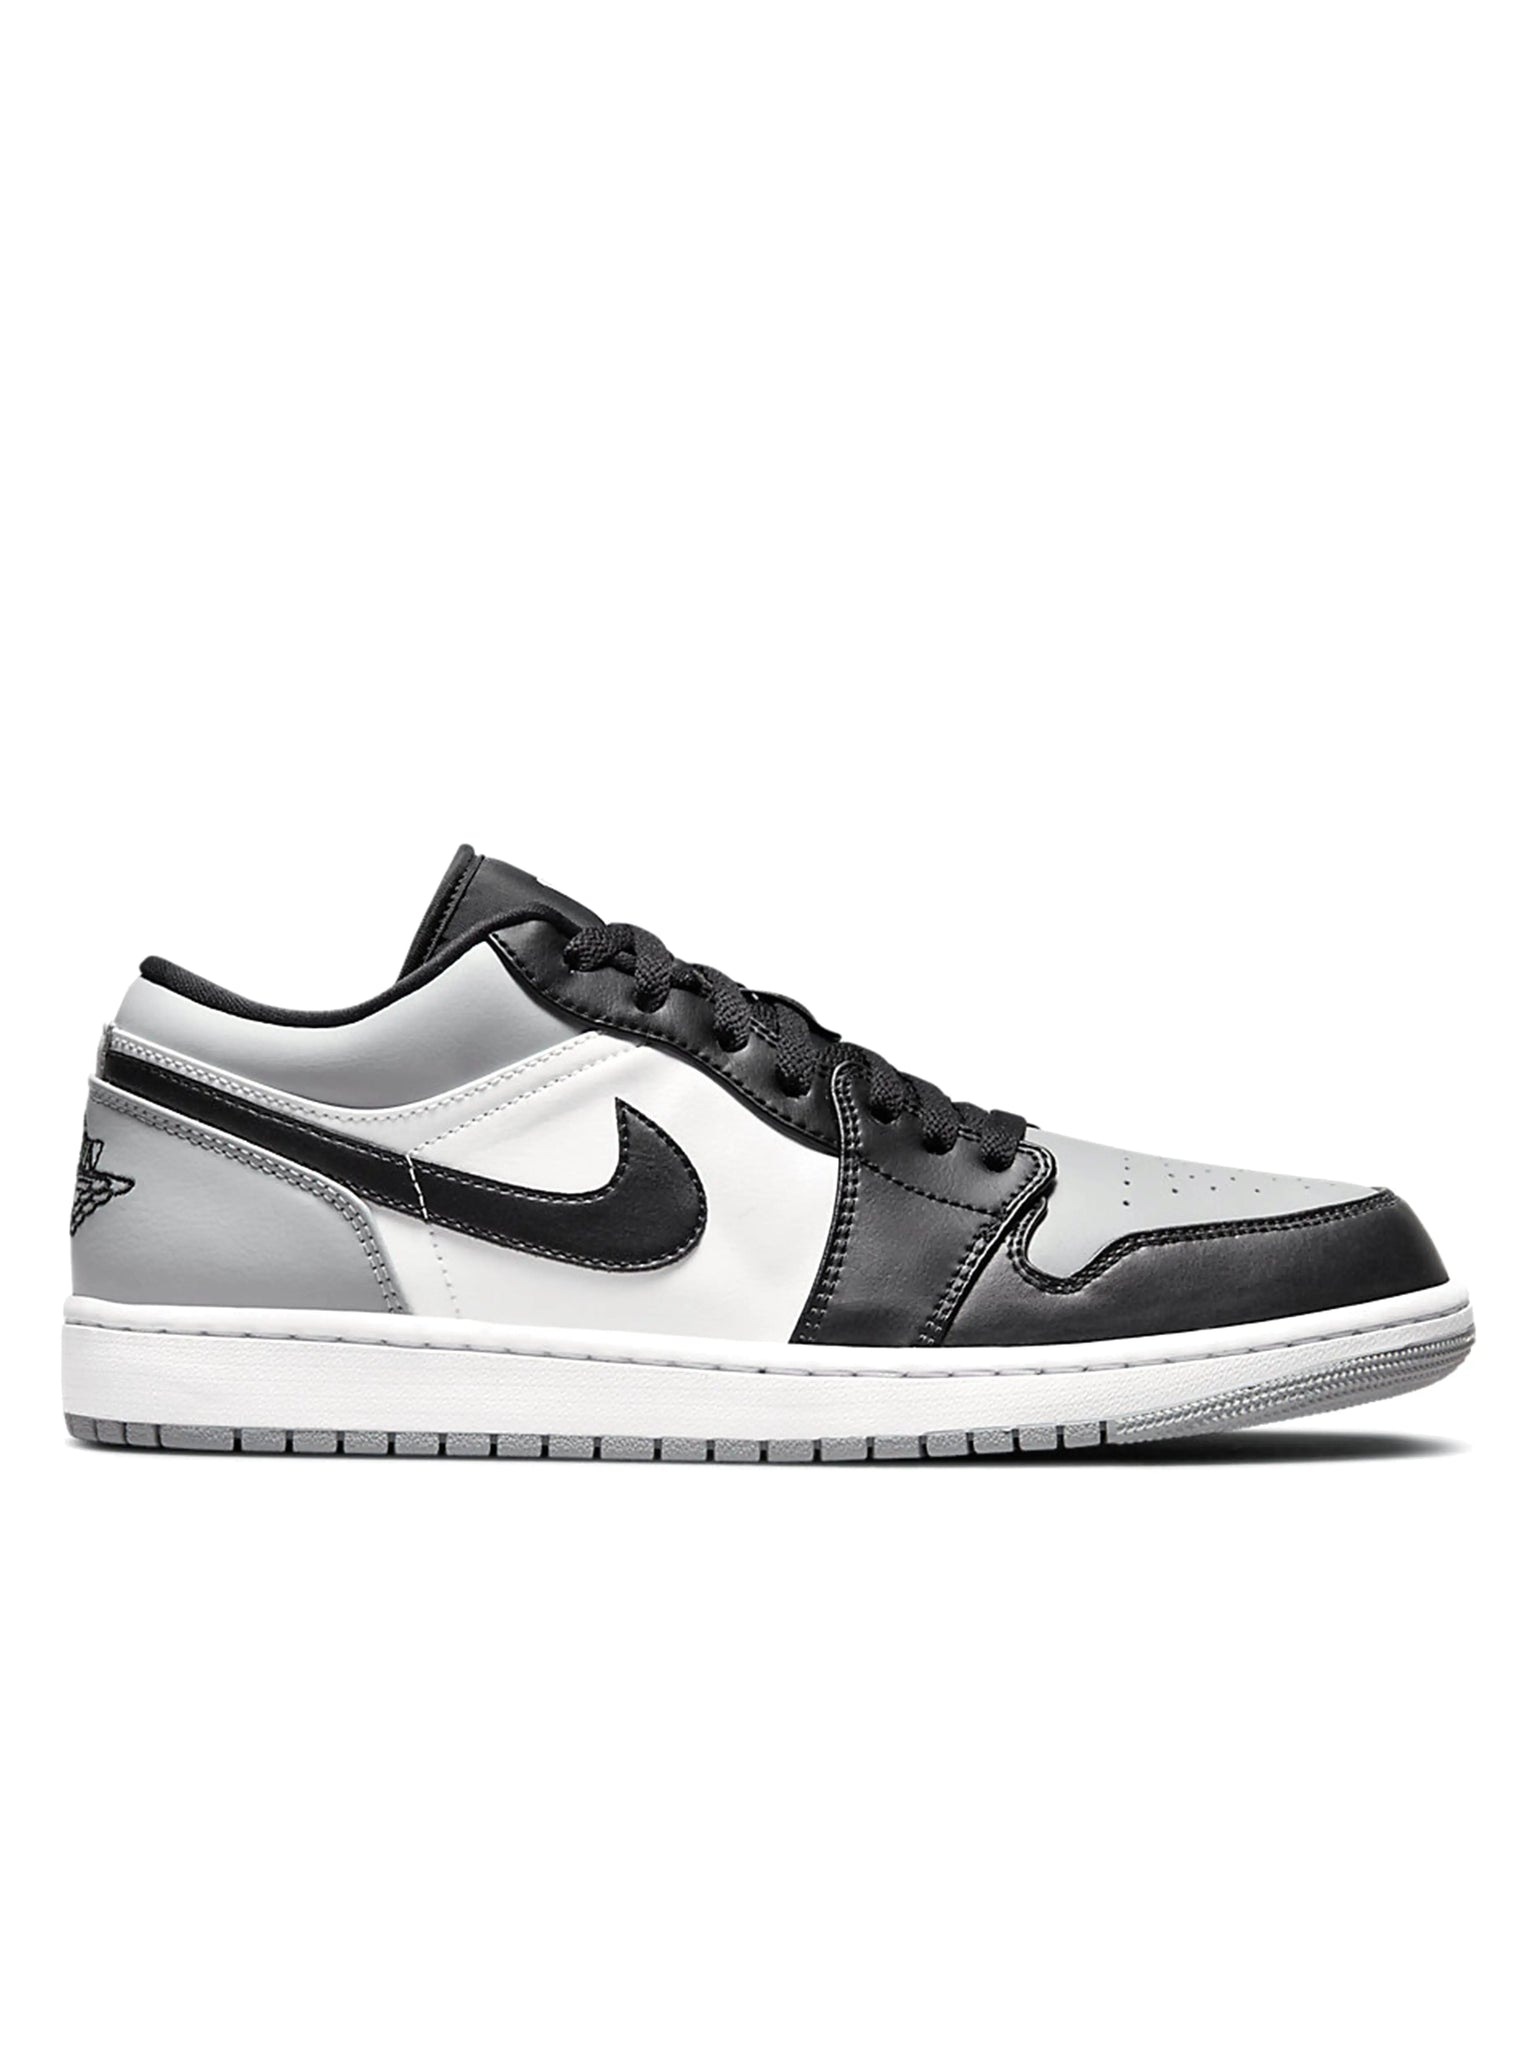 Nike Air Jordan 1 Low Shadow Toe Prior